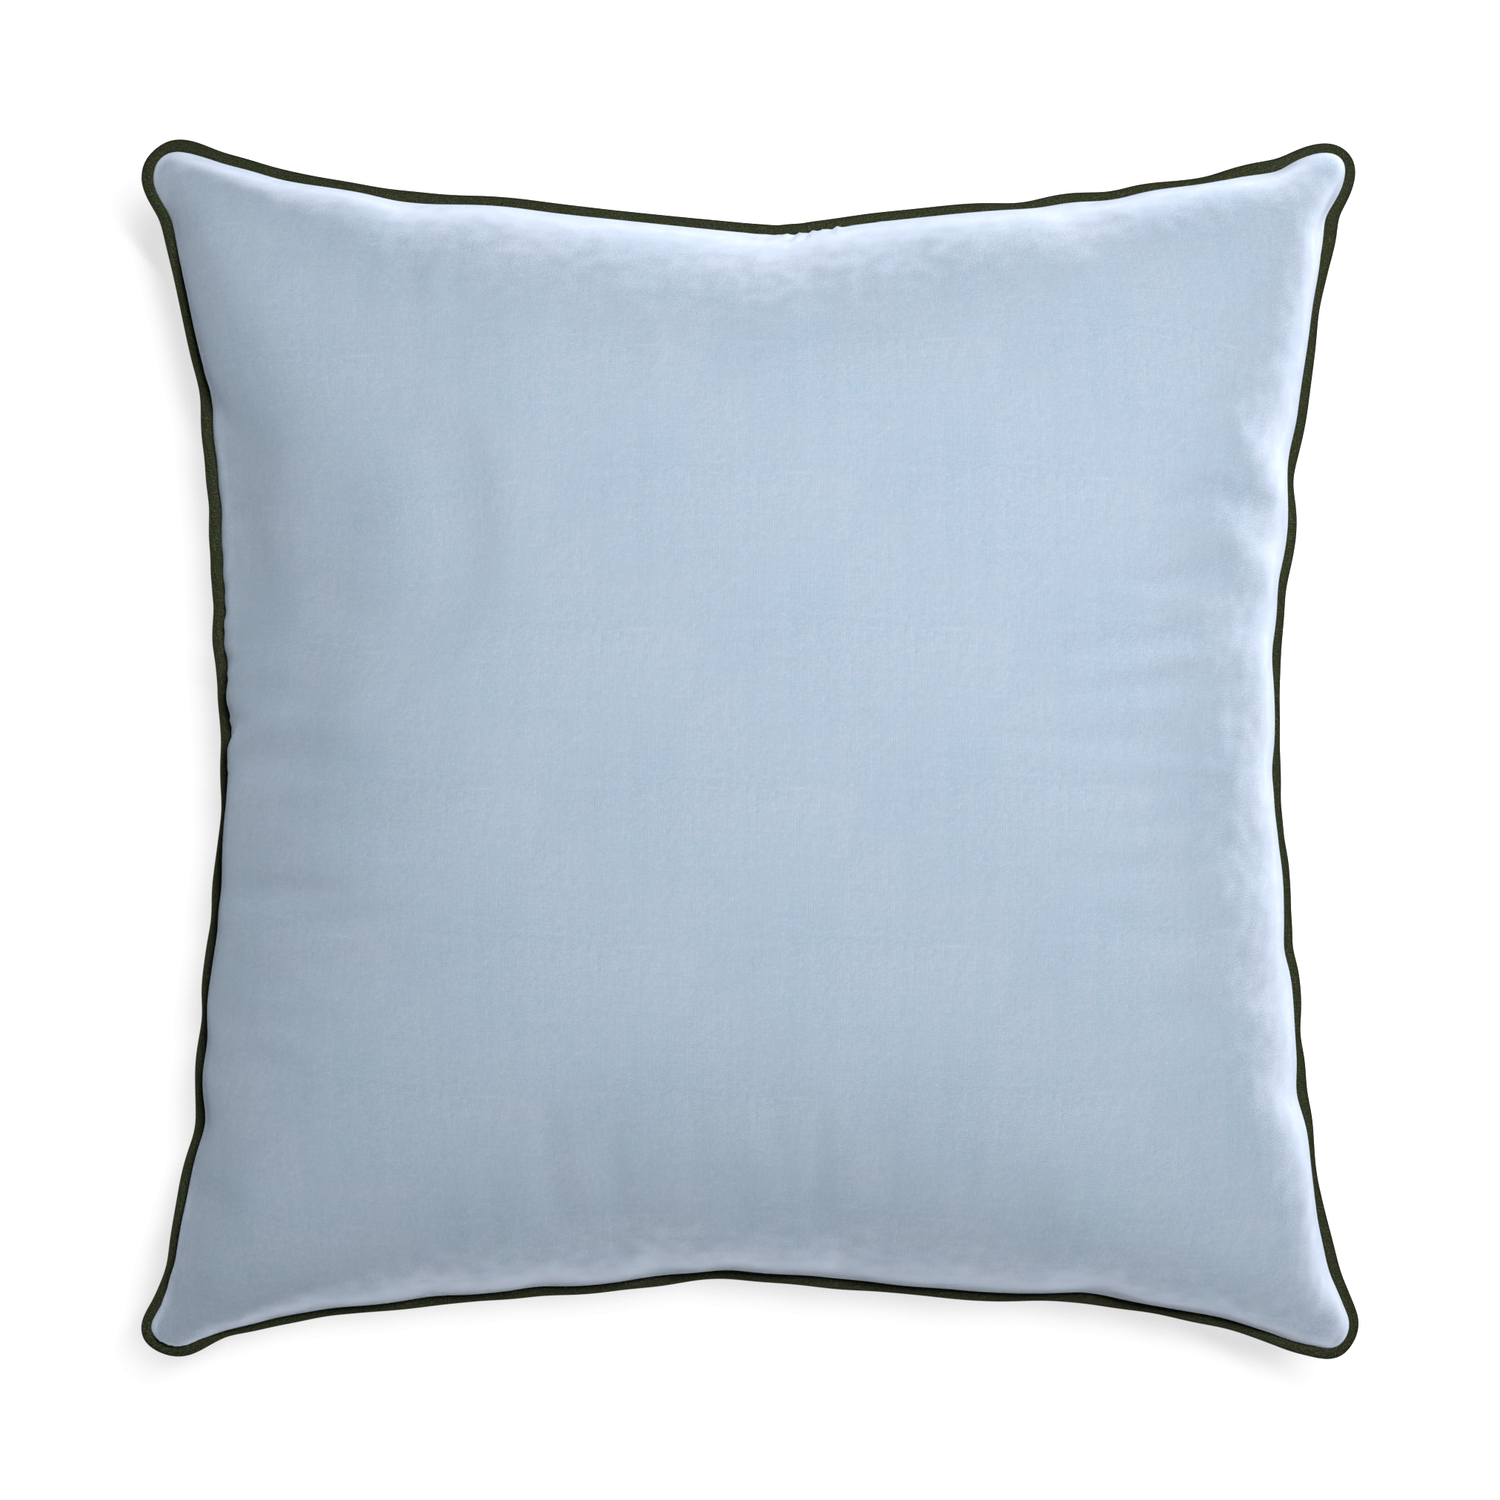 Euro-sham sky velvet custom pillow with f piping on white background